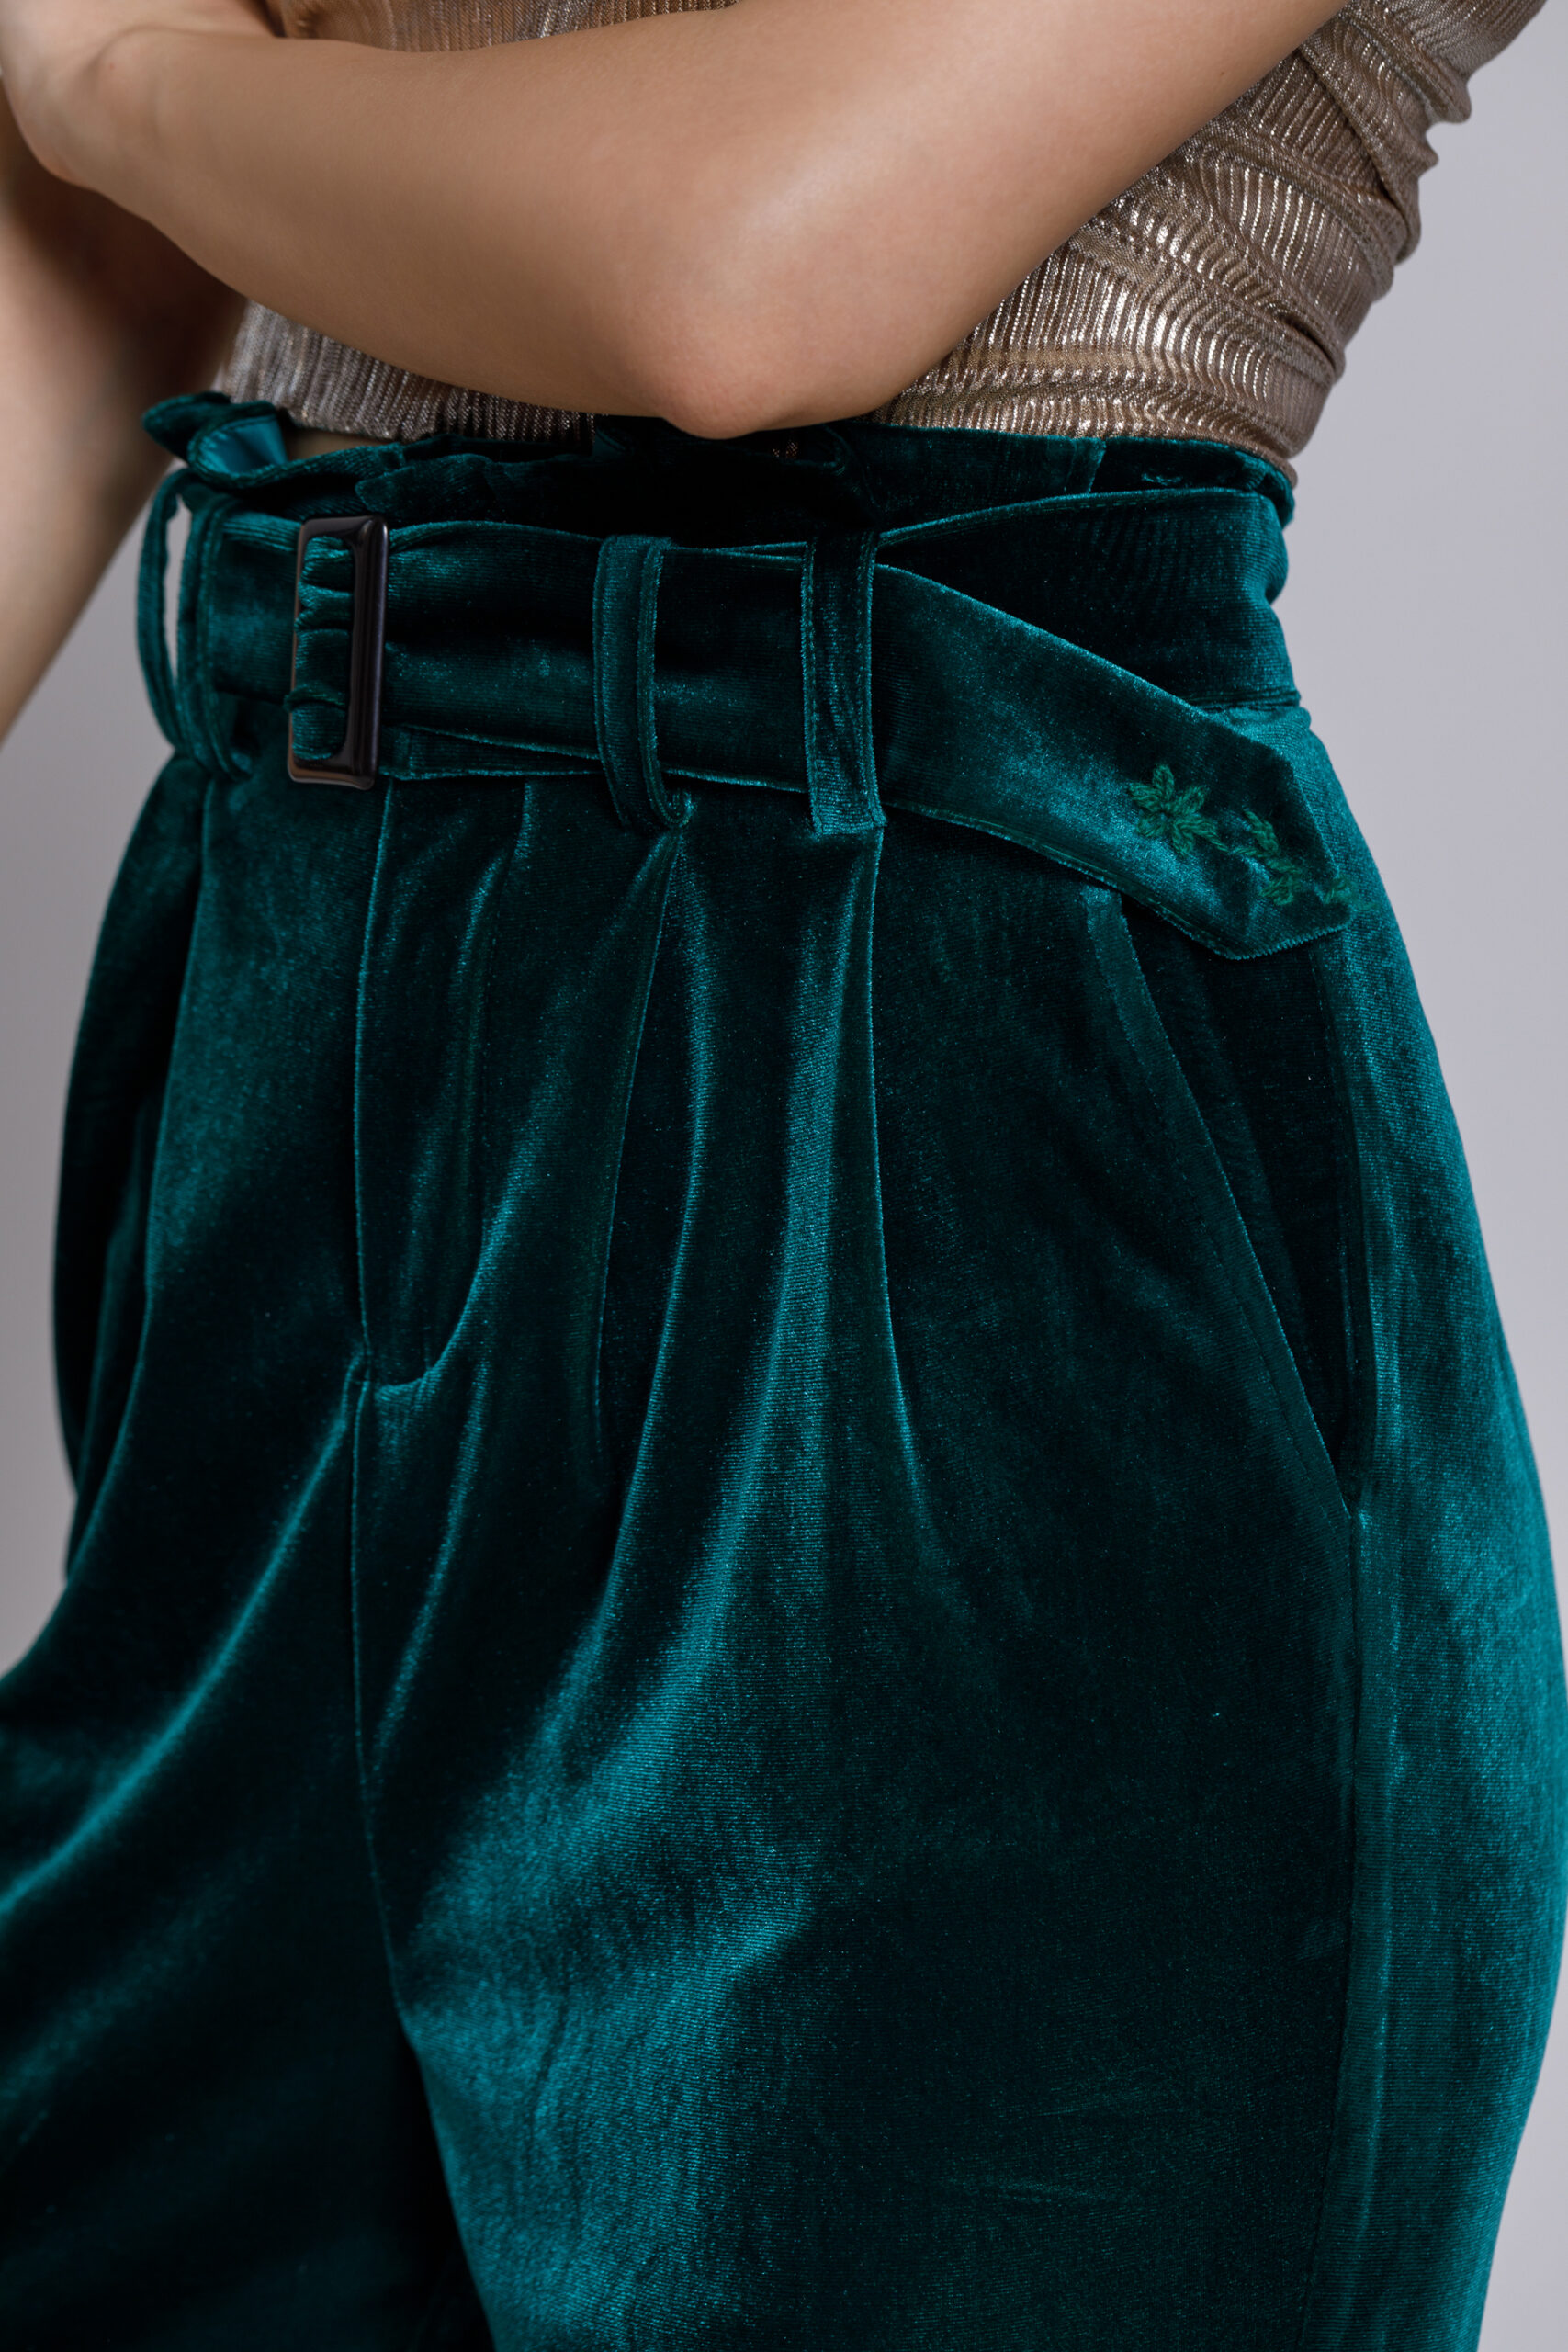 Pantalon CARMEN din catifea verde smarald cu curea. Materiale naturale, design unicat, cu broderie si aplicatii handmade